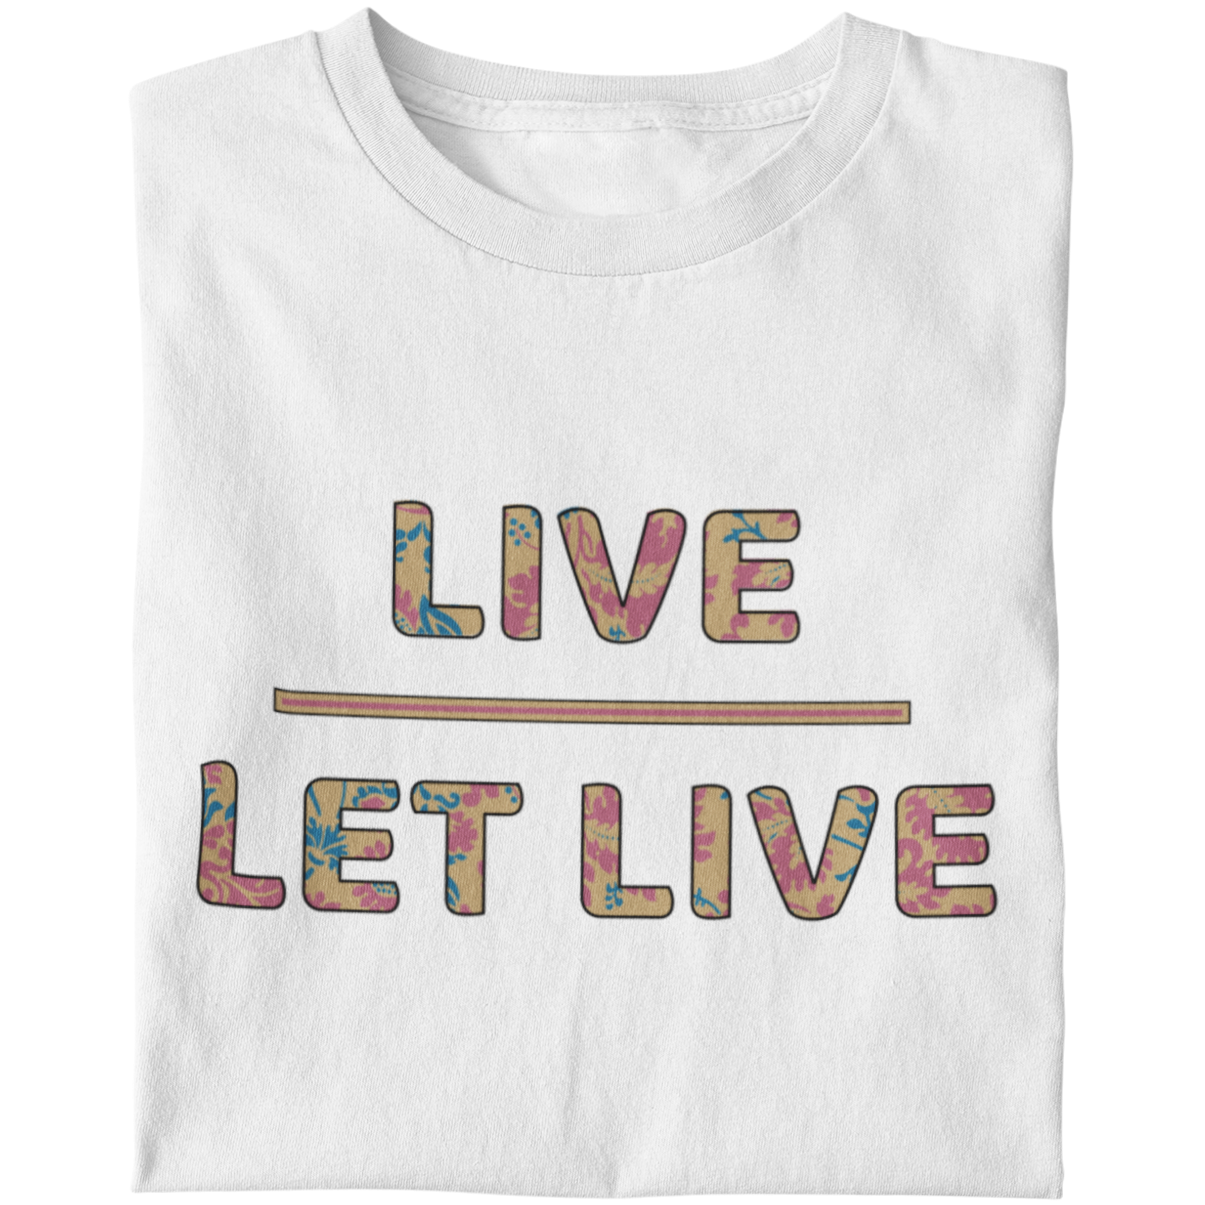 Live Let Live - Unisex T-Shirt